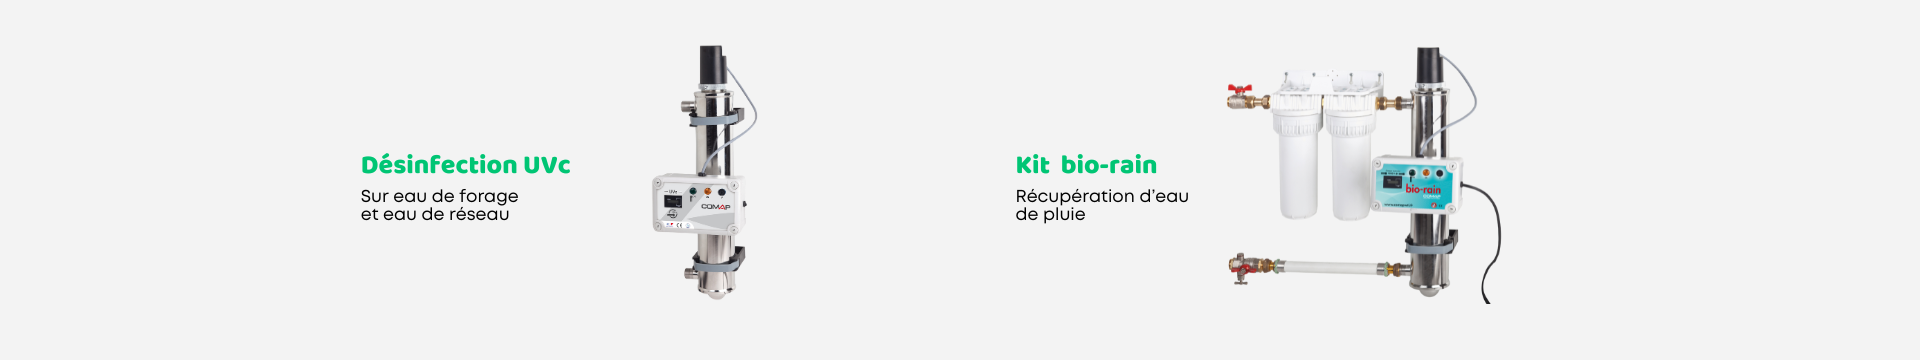 Désinfection Uvc - Kit bio-rain